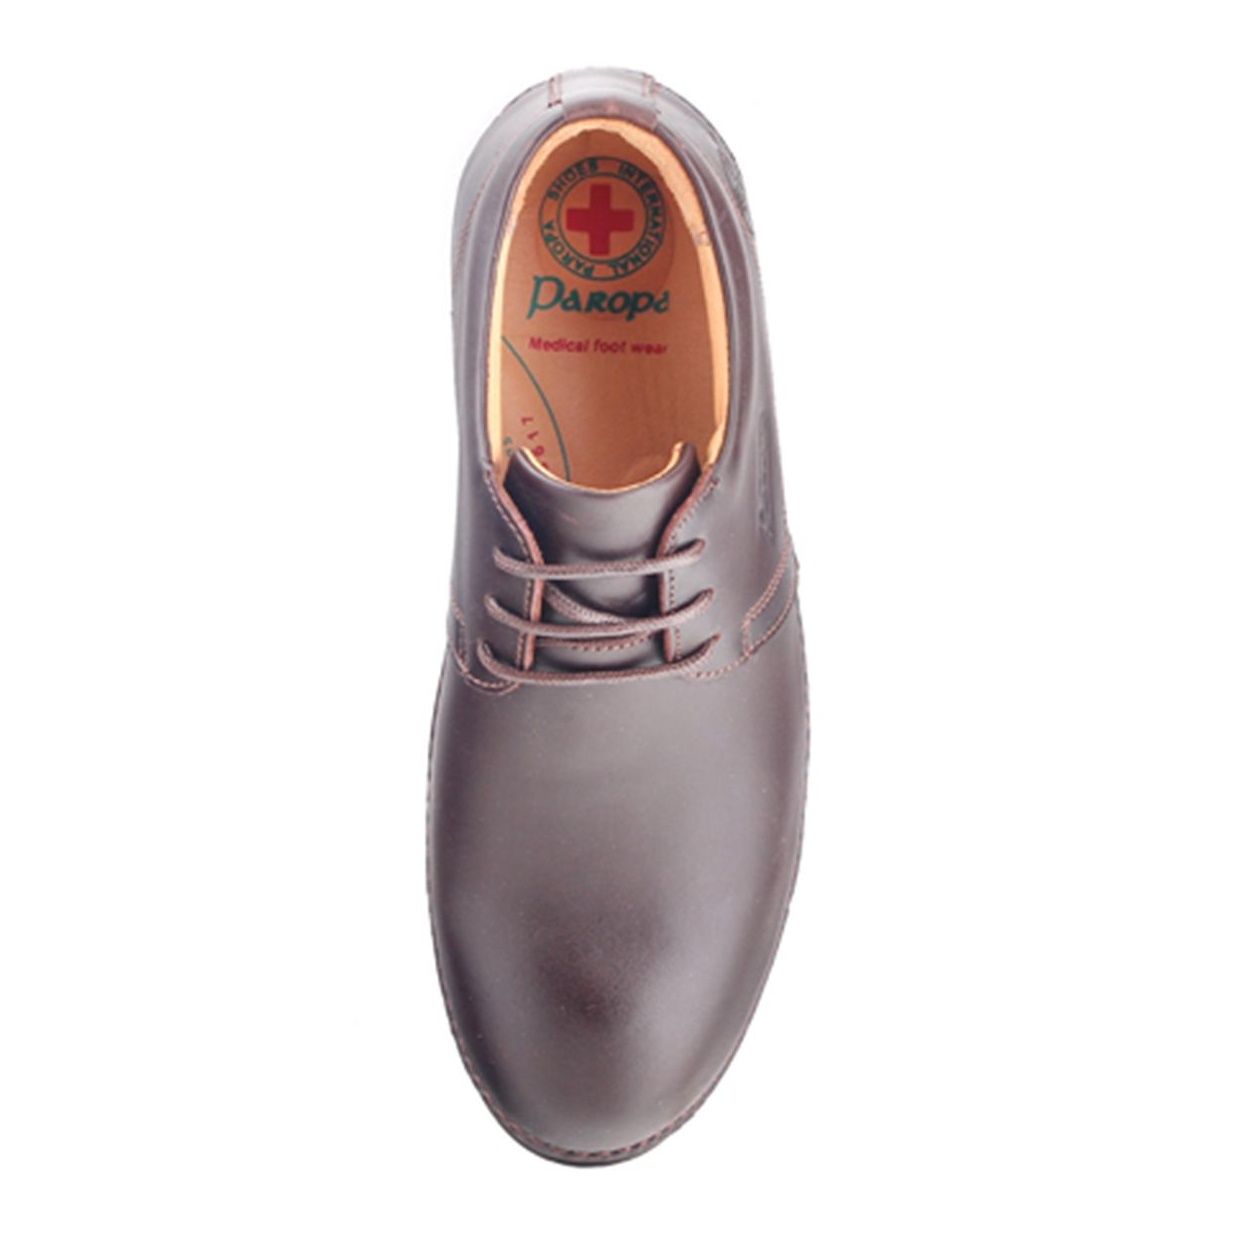 کفش مردانه پاروپا مدل دامون کد 70216521652